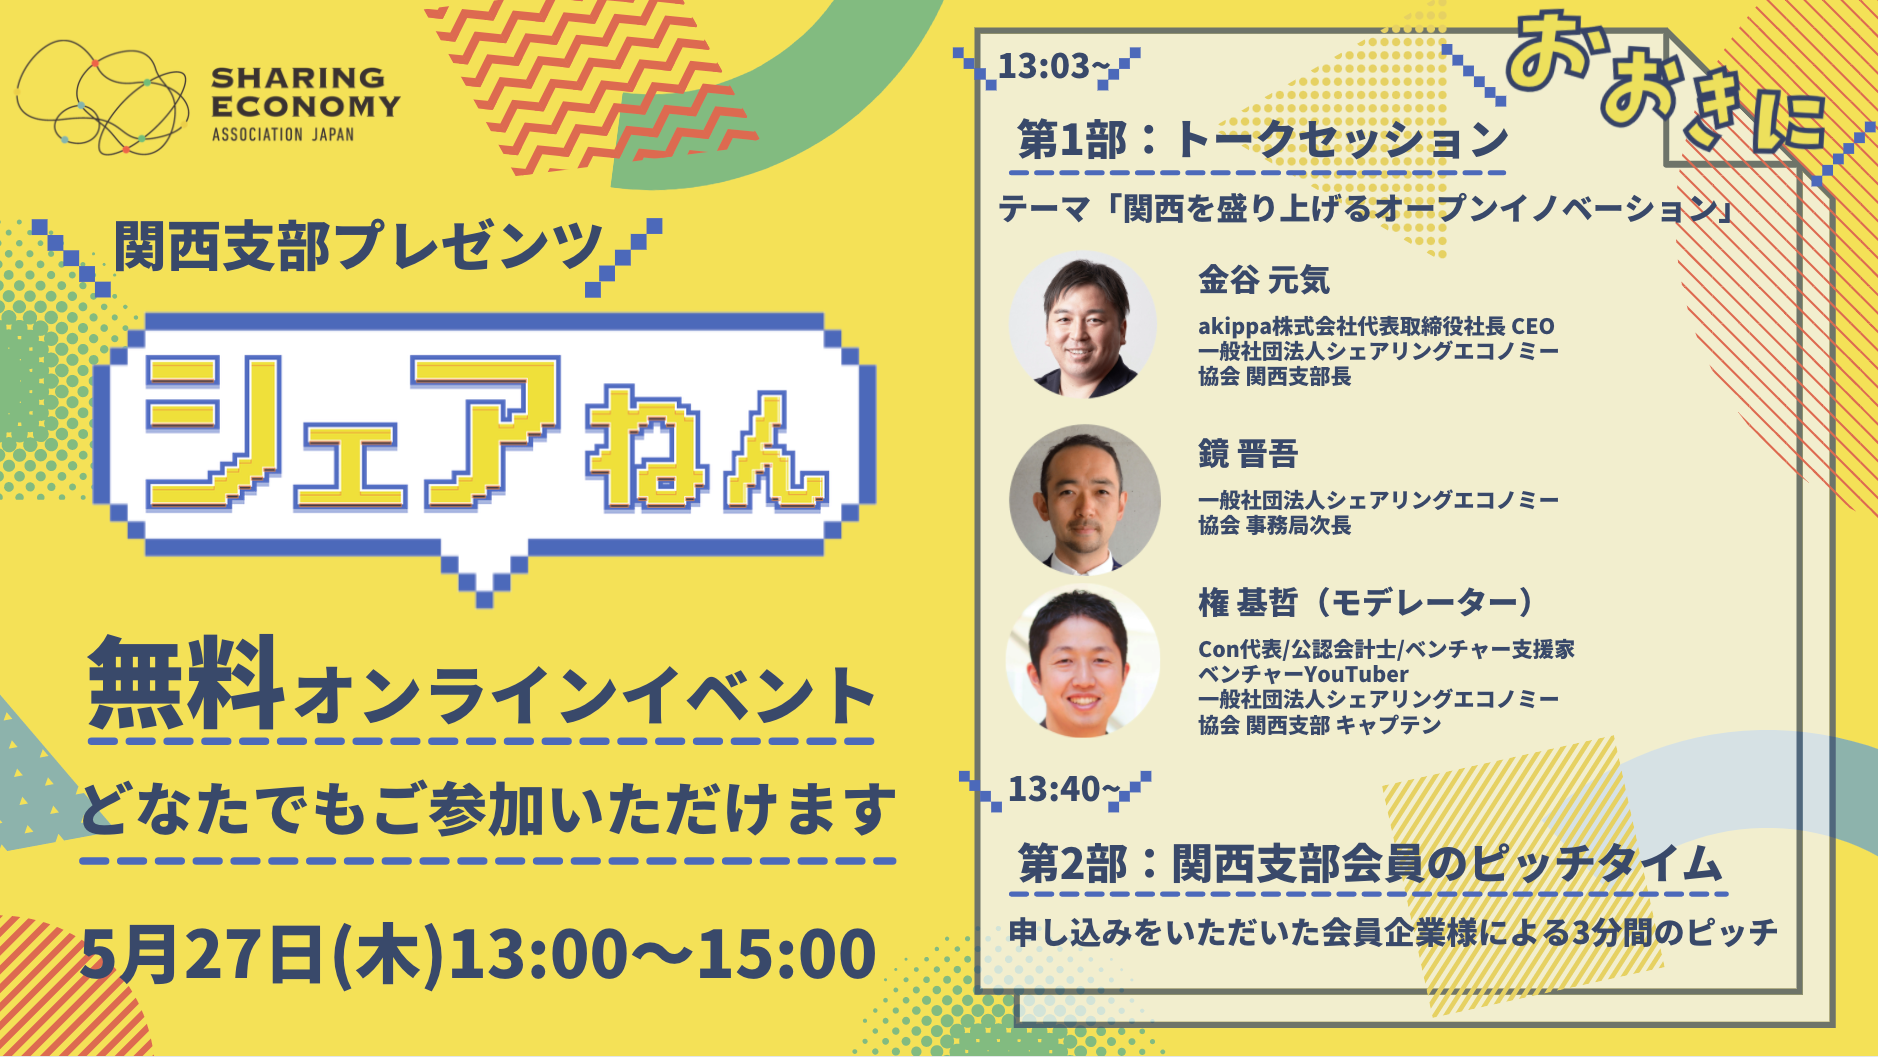 【開催レポート】関西支部 オンラインイベント「シェアねん」